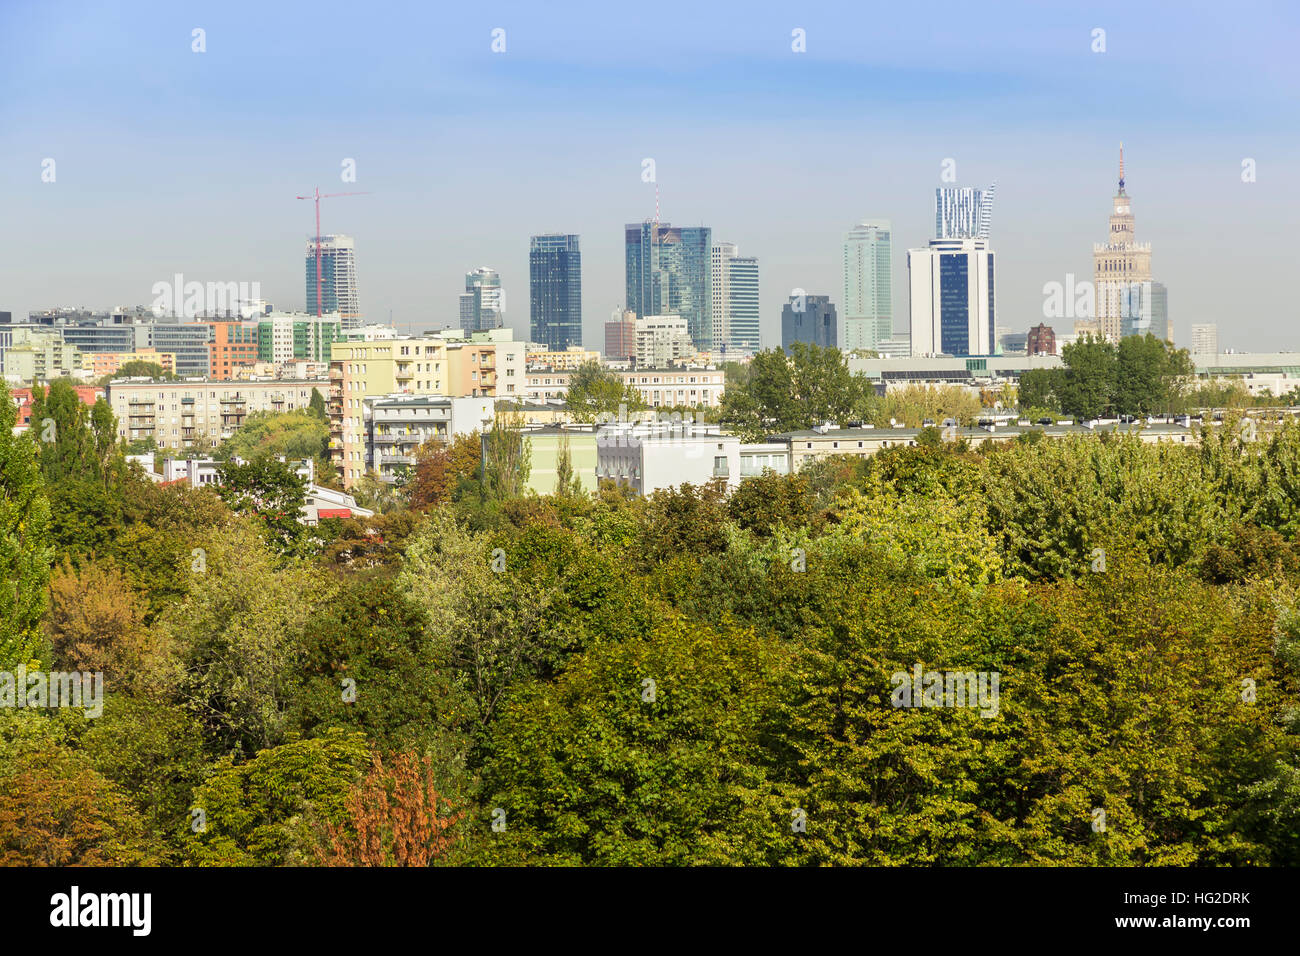 Ansicht von Warschau - Hauptstadt Polens. Innenstadt mit Palast der Kultur und Wissenschaft und Grünflächen. Stockfoto